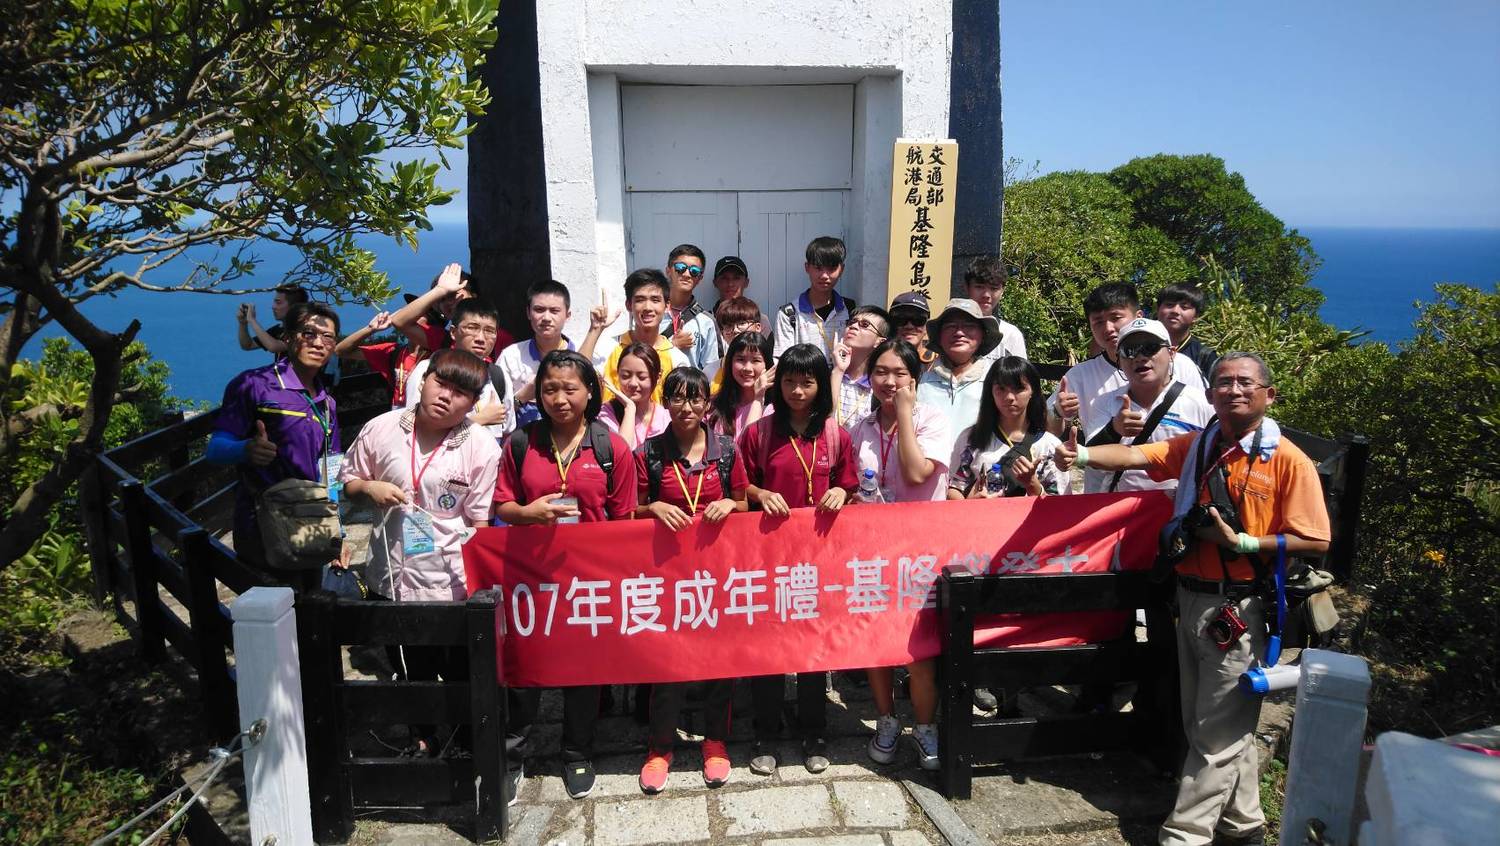 基隆嶼有「台灣龍珠」美譽，為向學子介紹這個特殊美景，基隆市政府今(20)日特舉辦「基隆嶼登大人」成年禮活動。